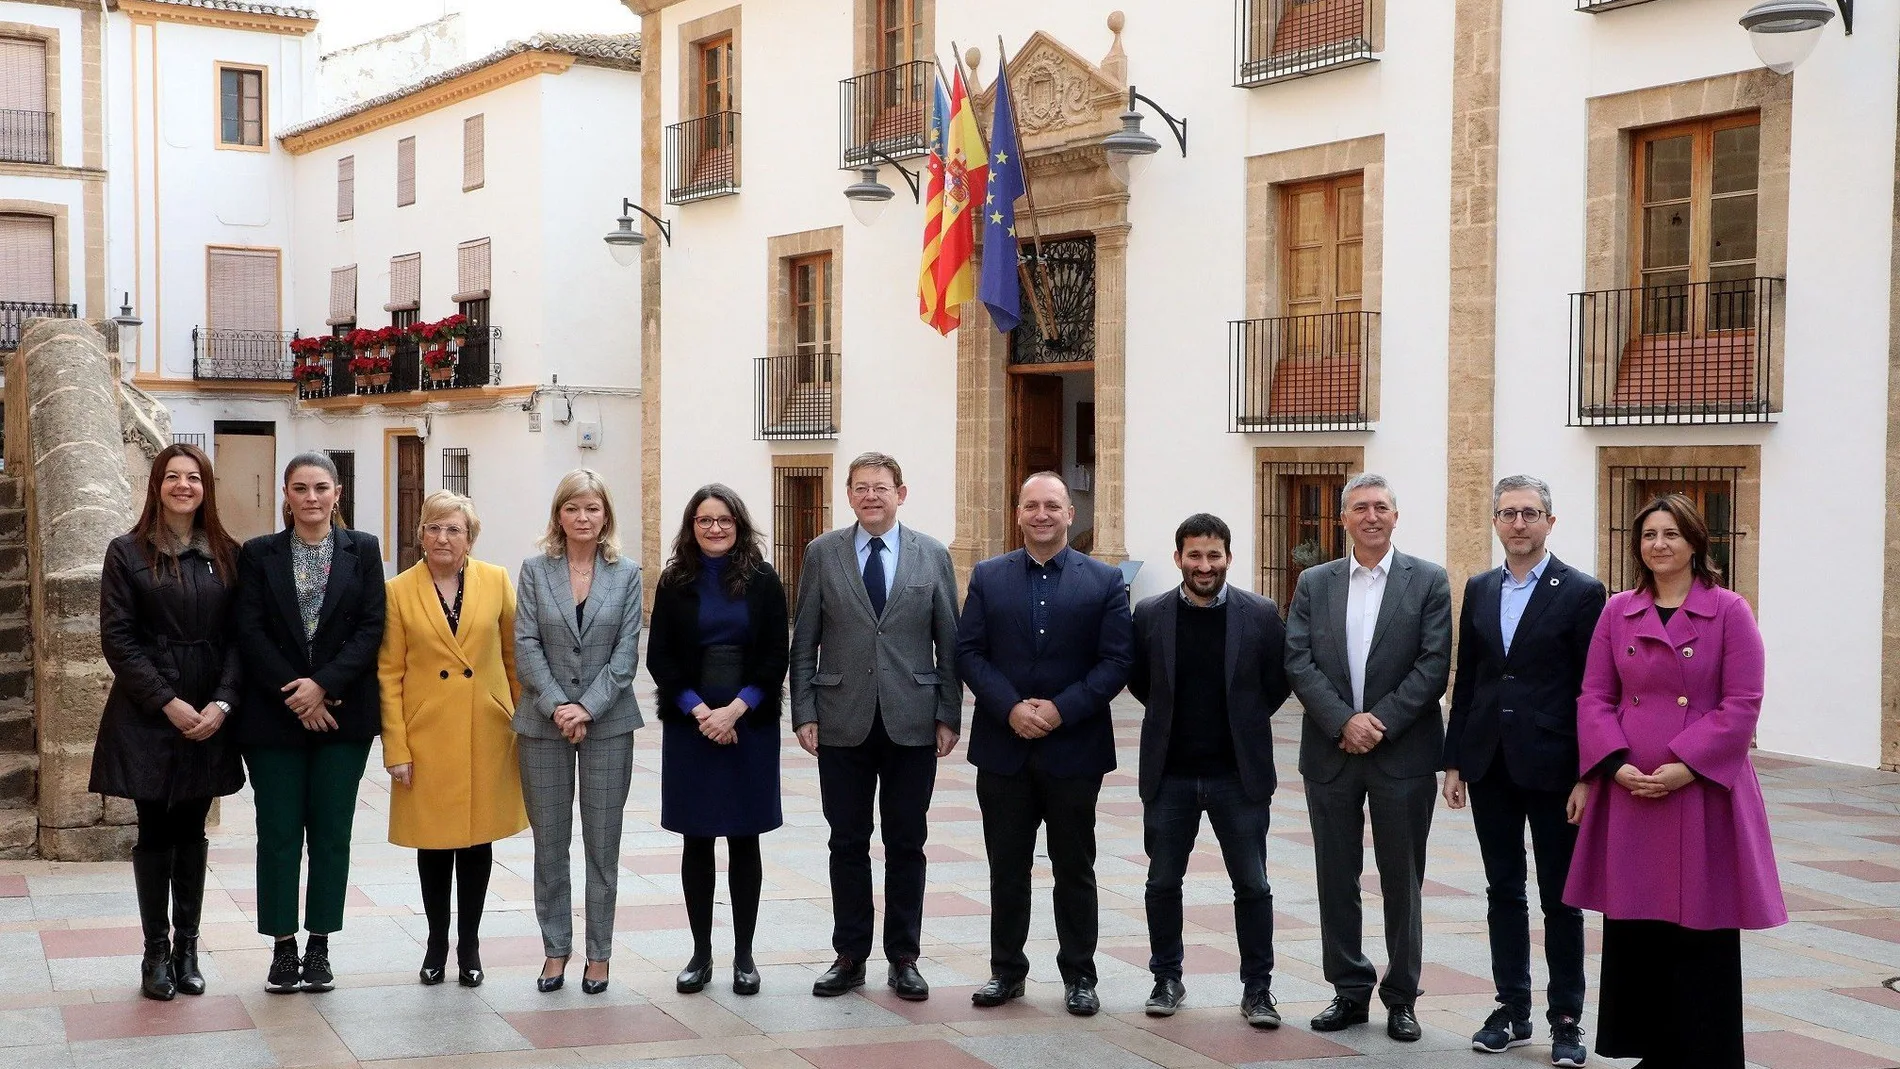 Fotografía facilitada por la GVA de los miembros del Gobierno valenciano momentos antes de la reunión de un Pleno del Consell reciente